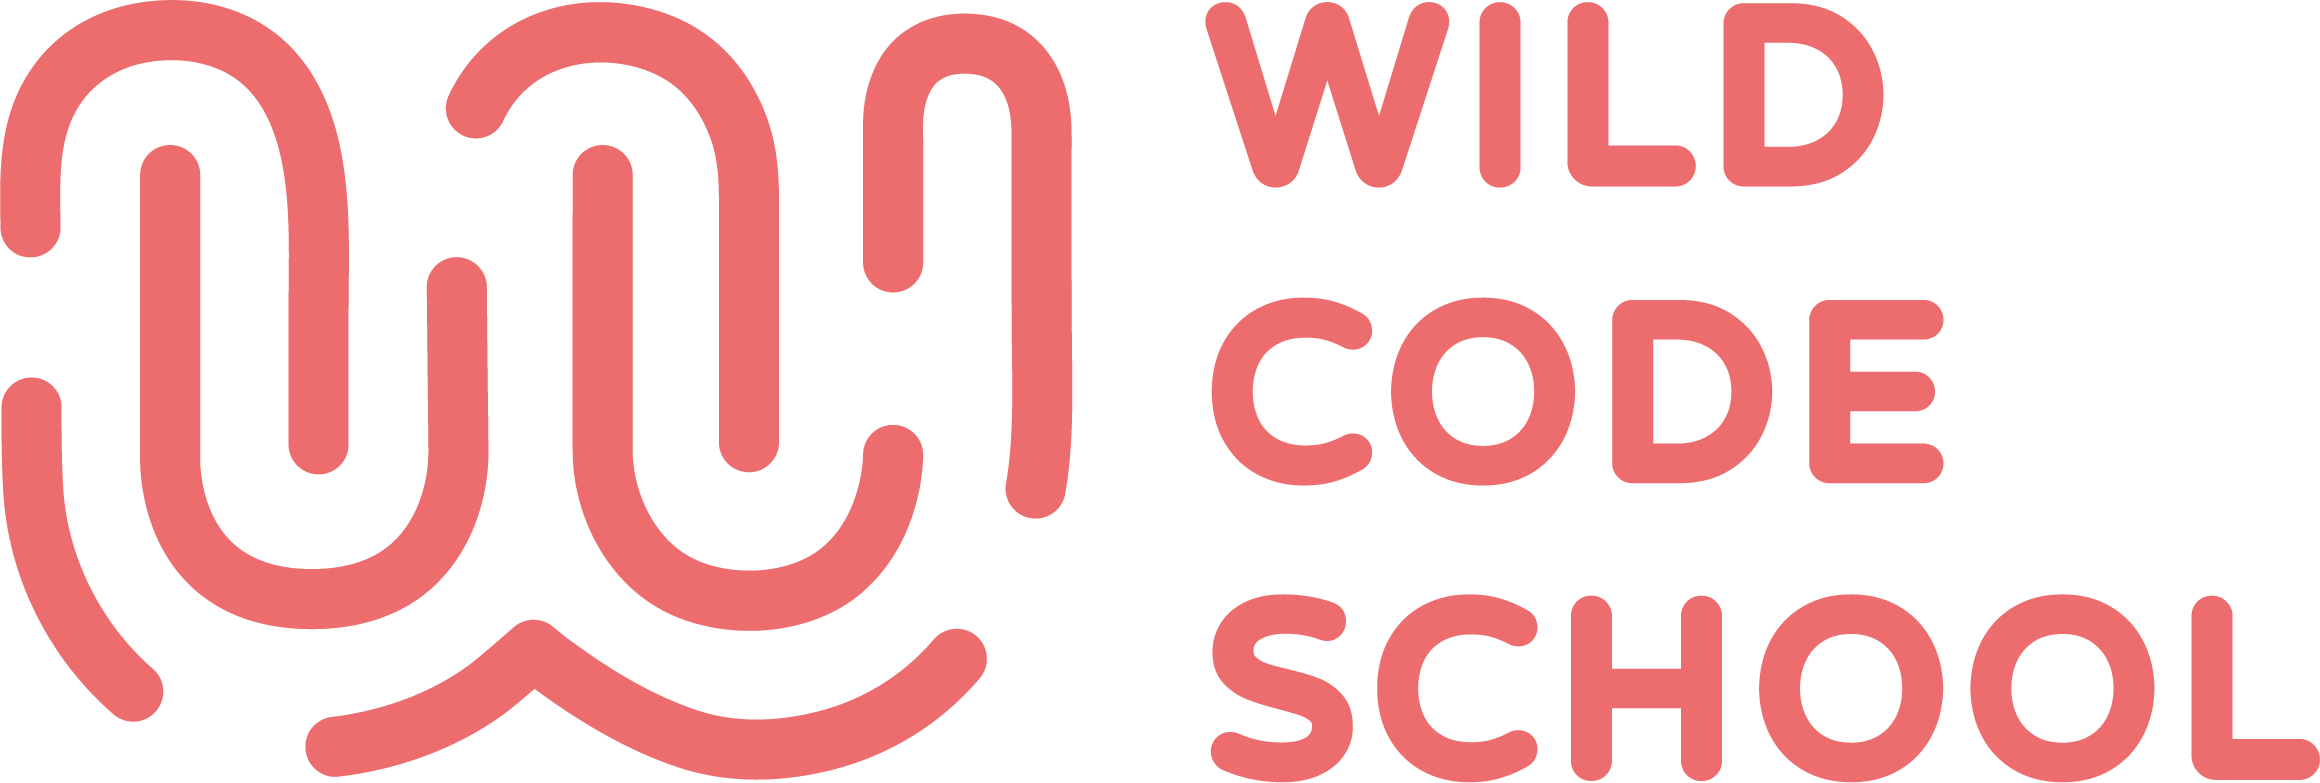 Wild code school logo